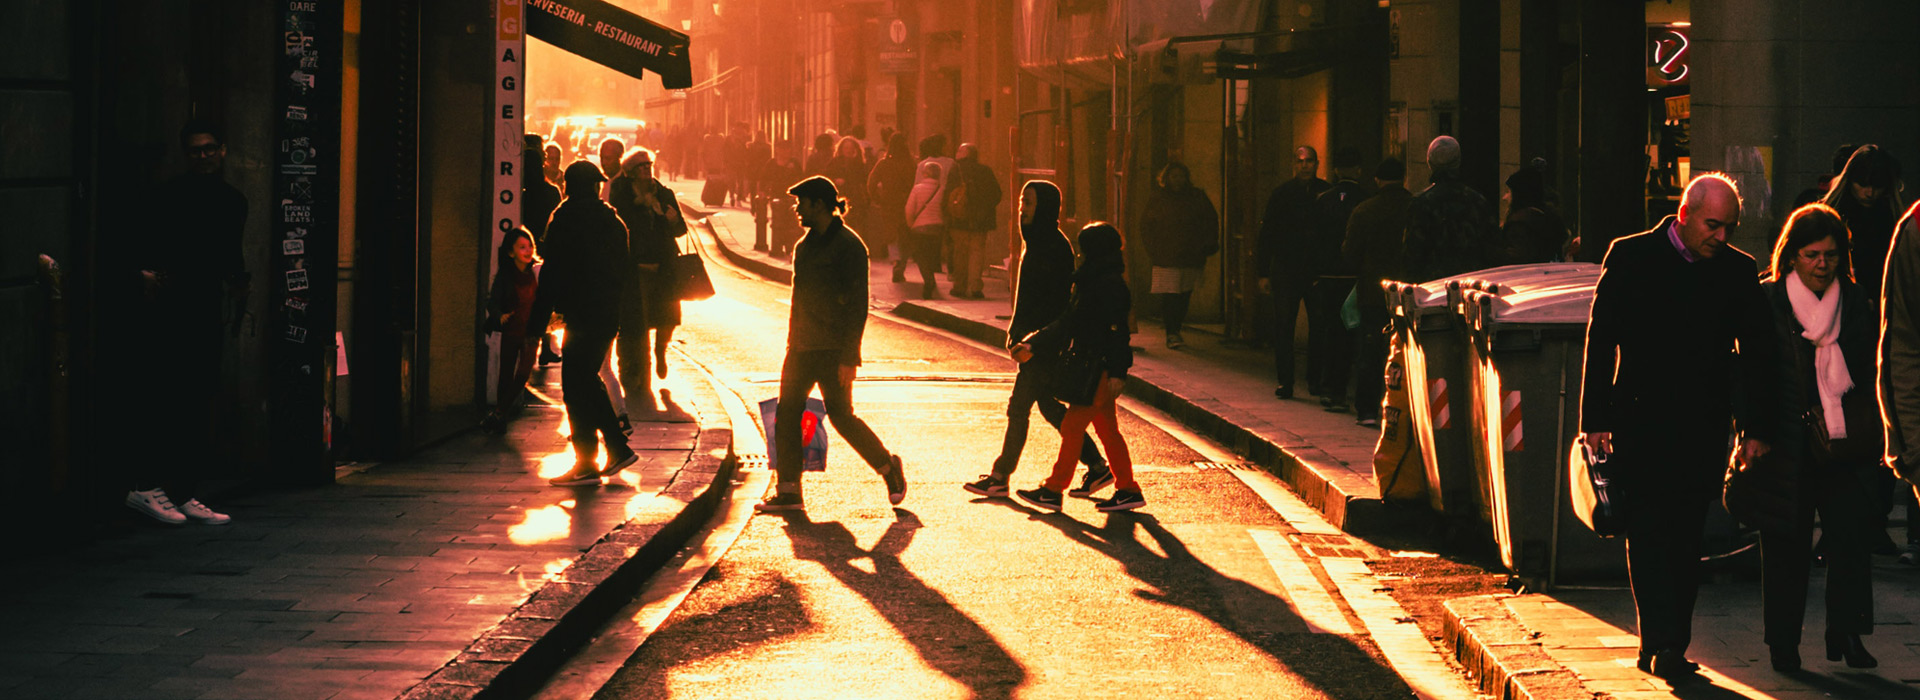 People walking in a crowded street day break dawn warm